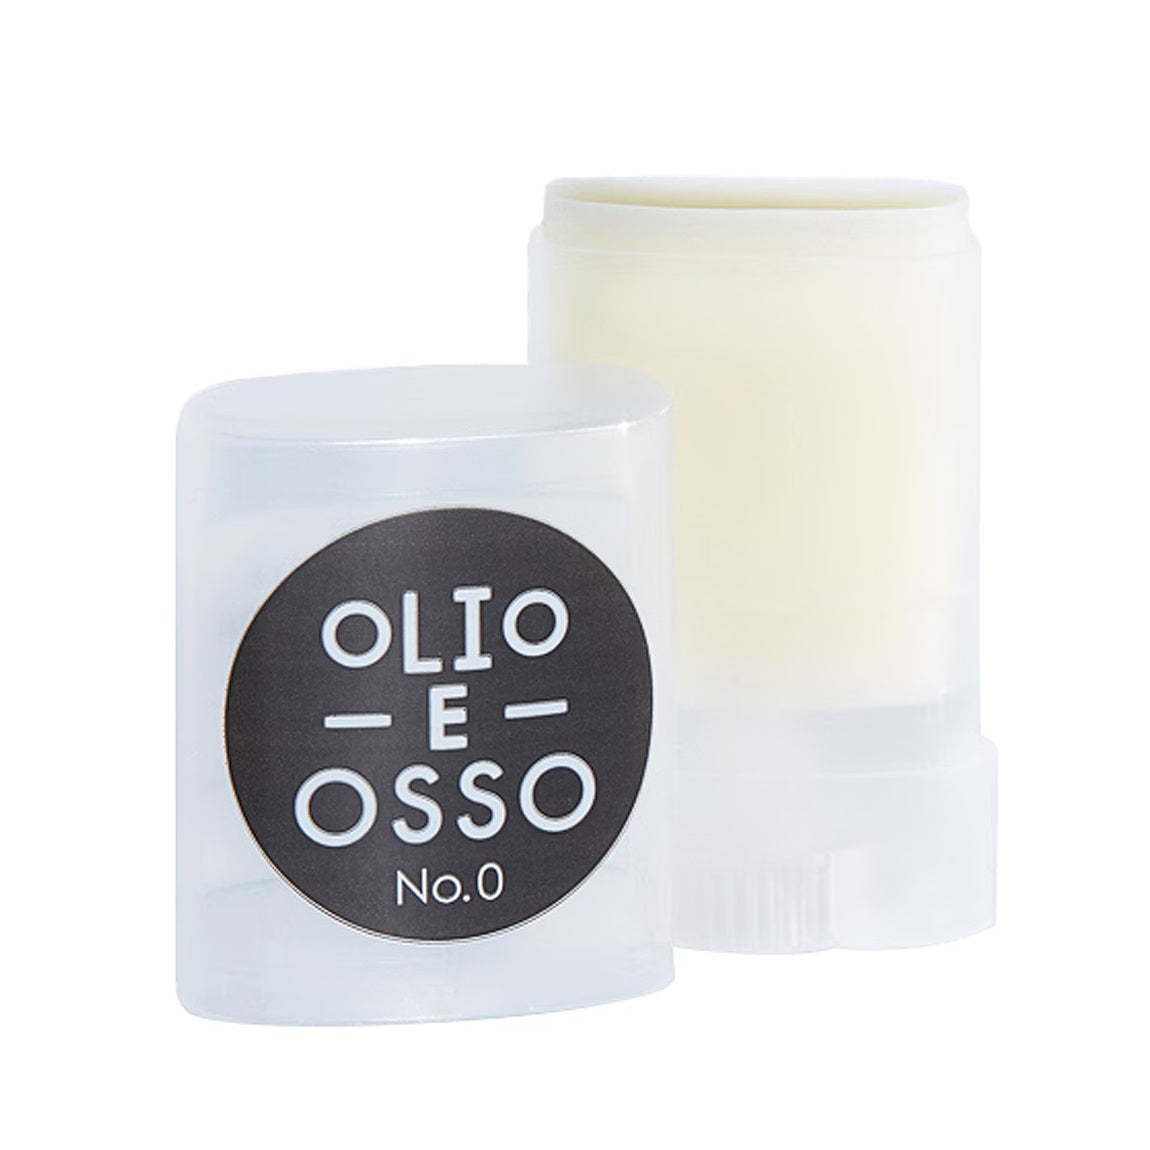 Olio E Osso Lip and Cheek Balm 10g - 0 Netto